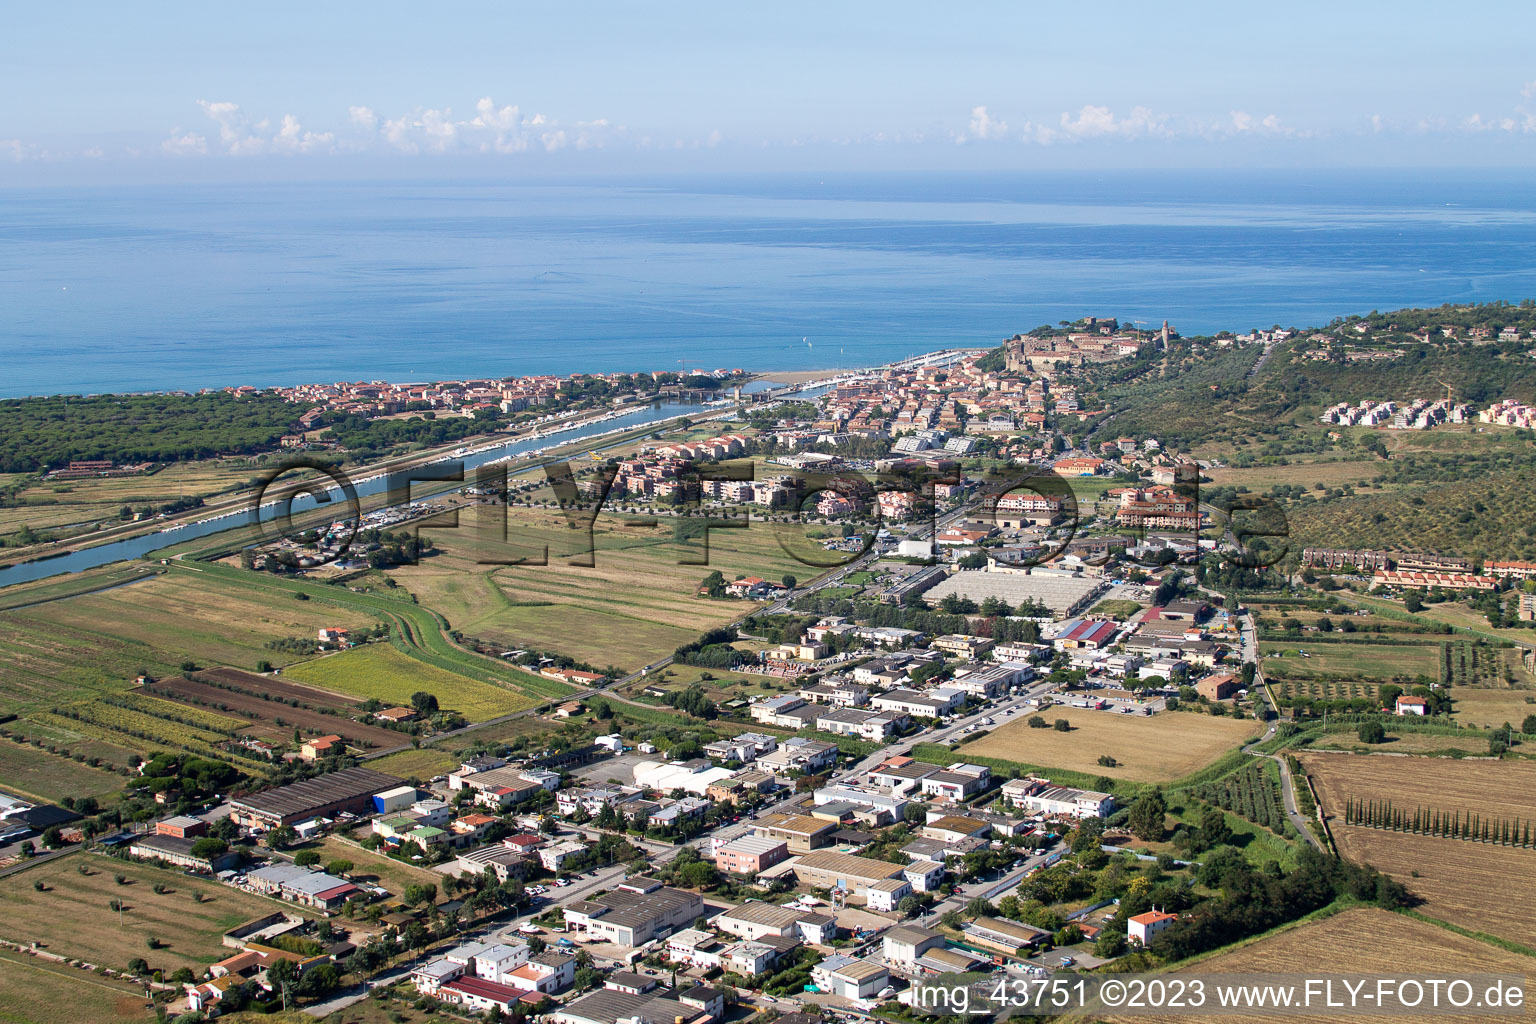 Aerial view of Castiglione della Pescaia in the state Tuscany, Italy